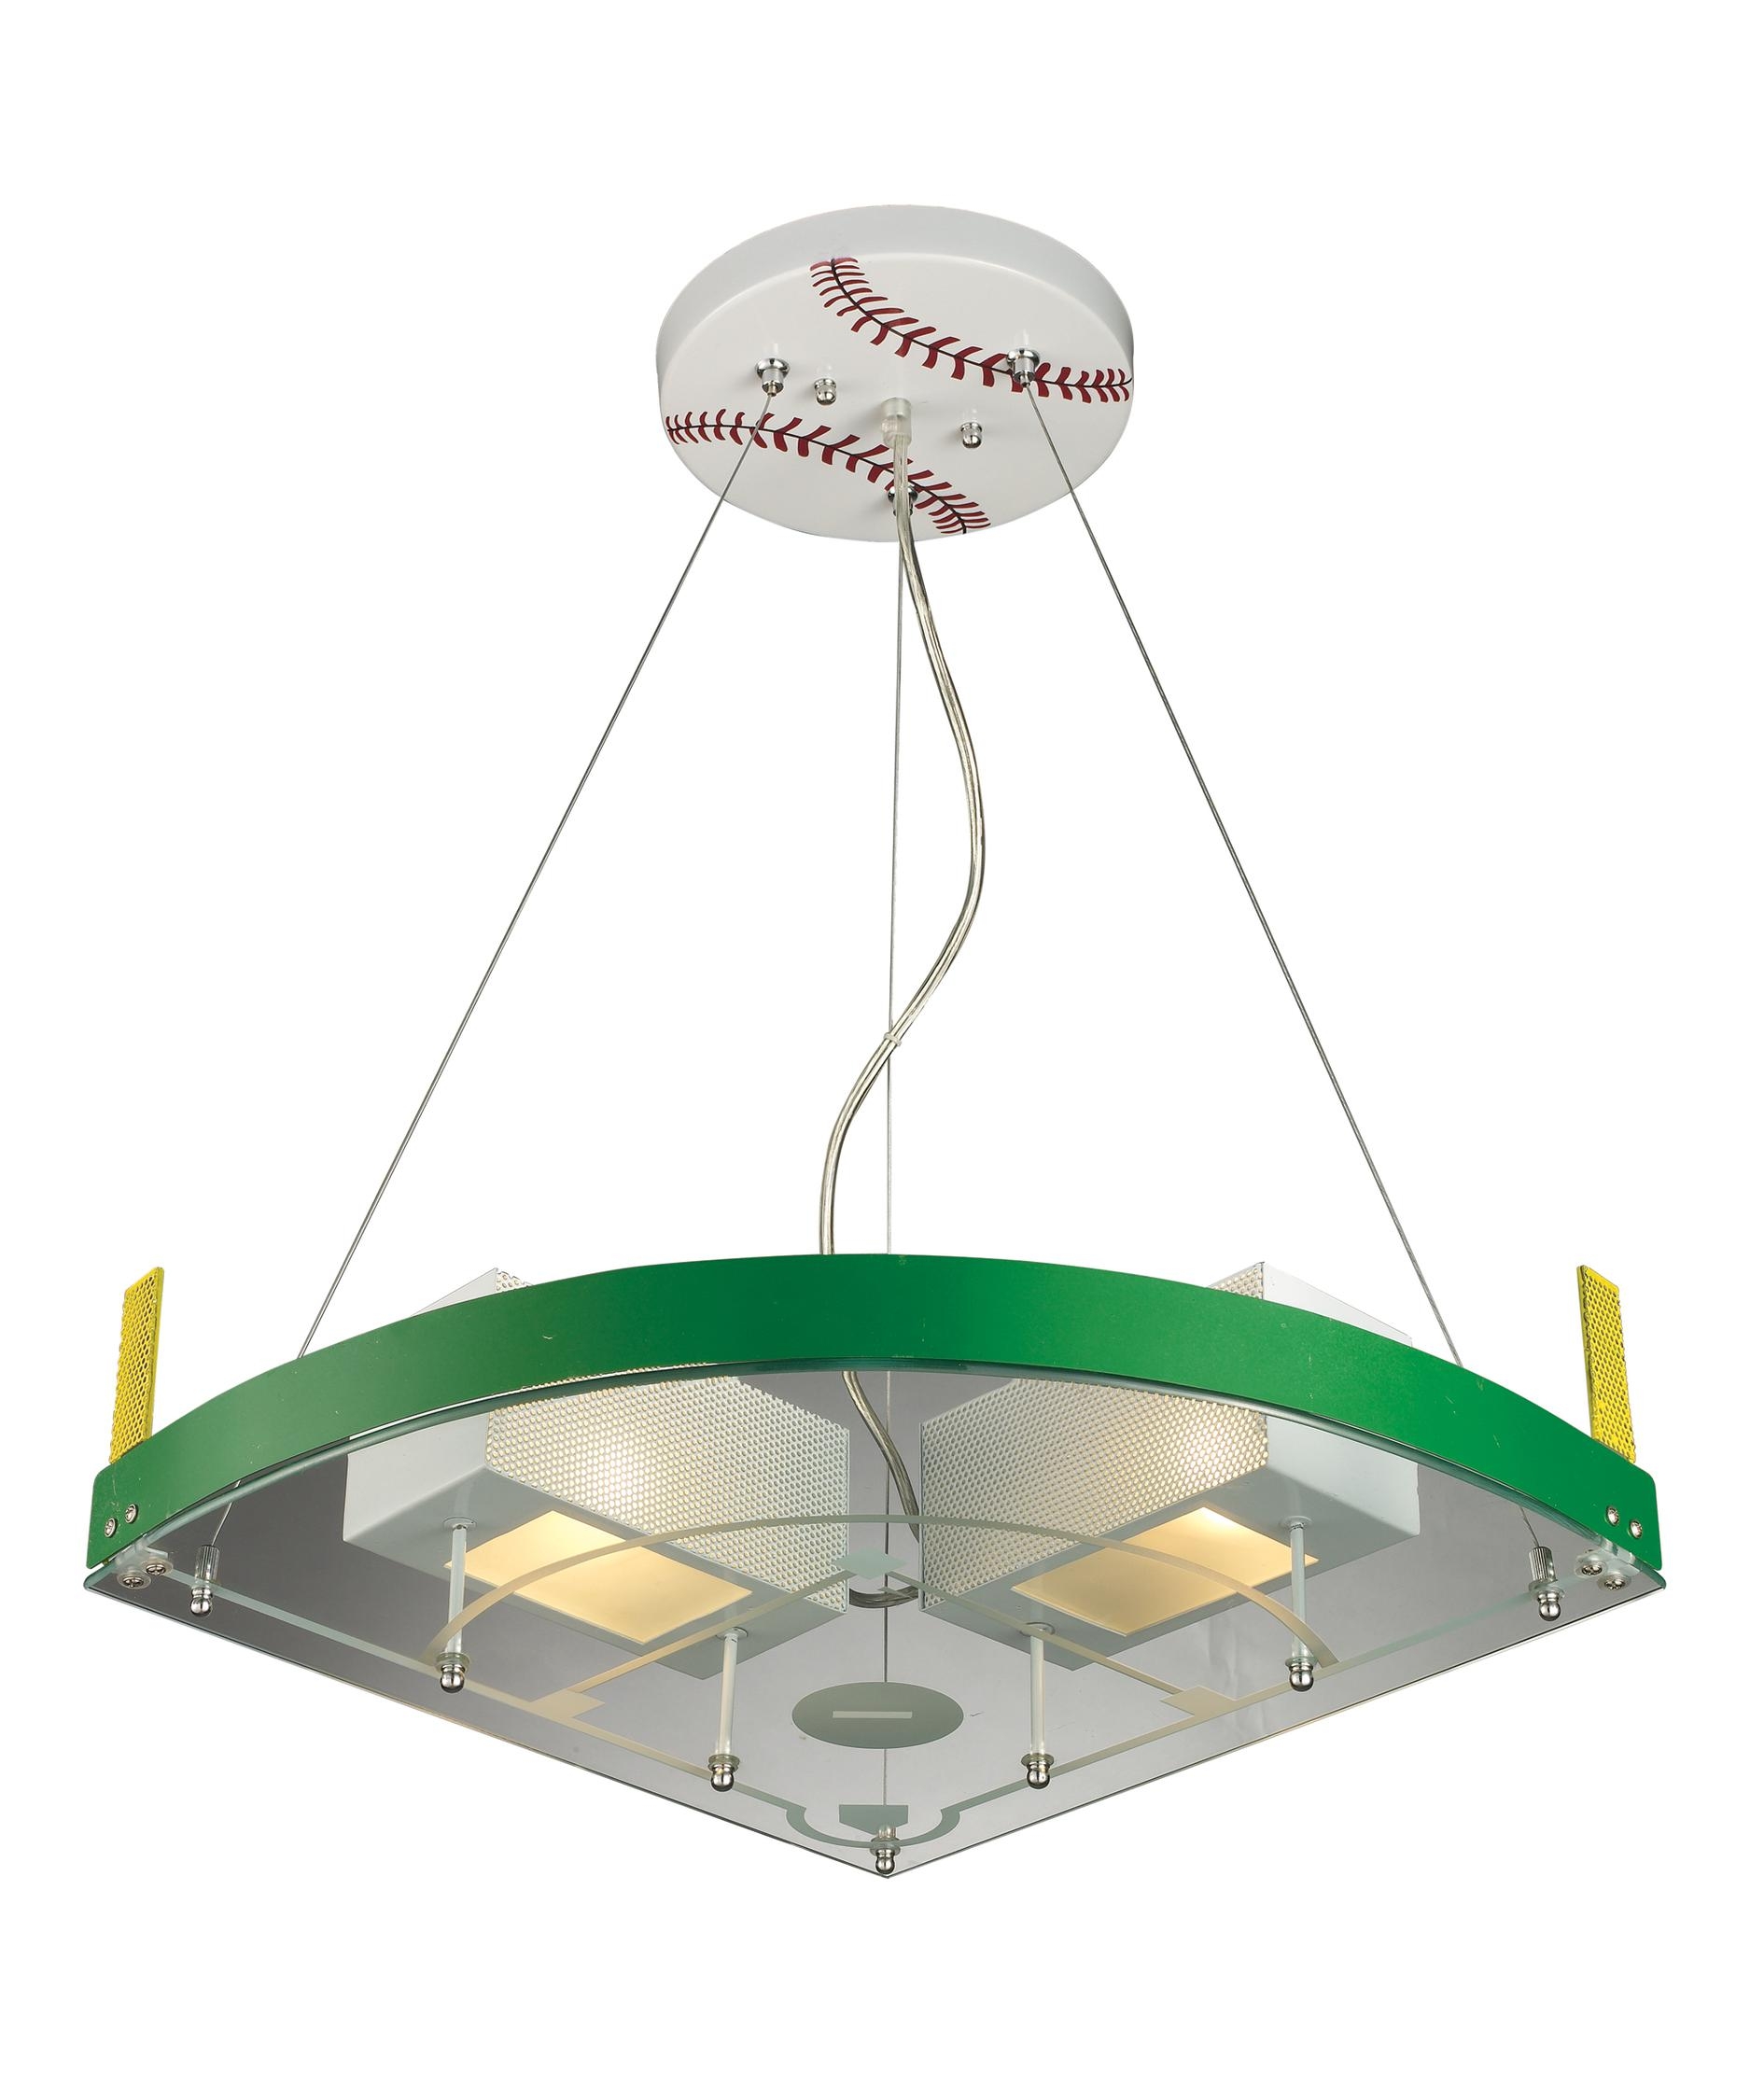 Baseball Themed Ceiling Light